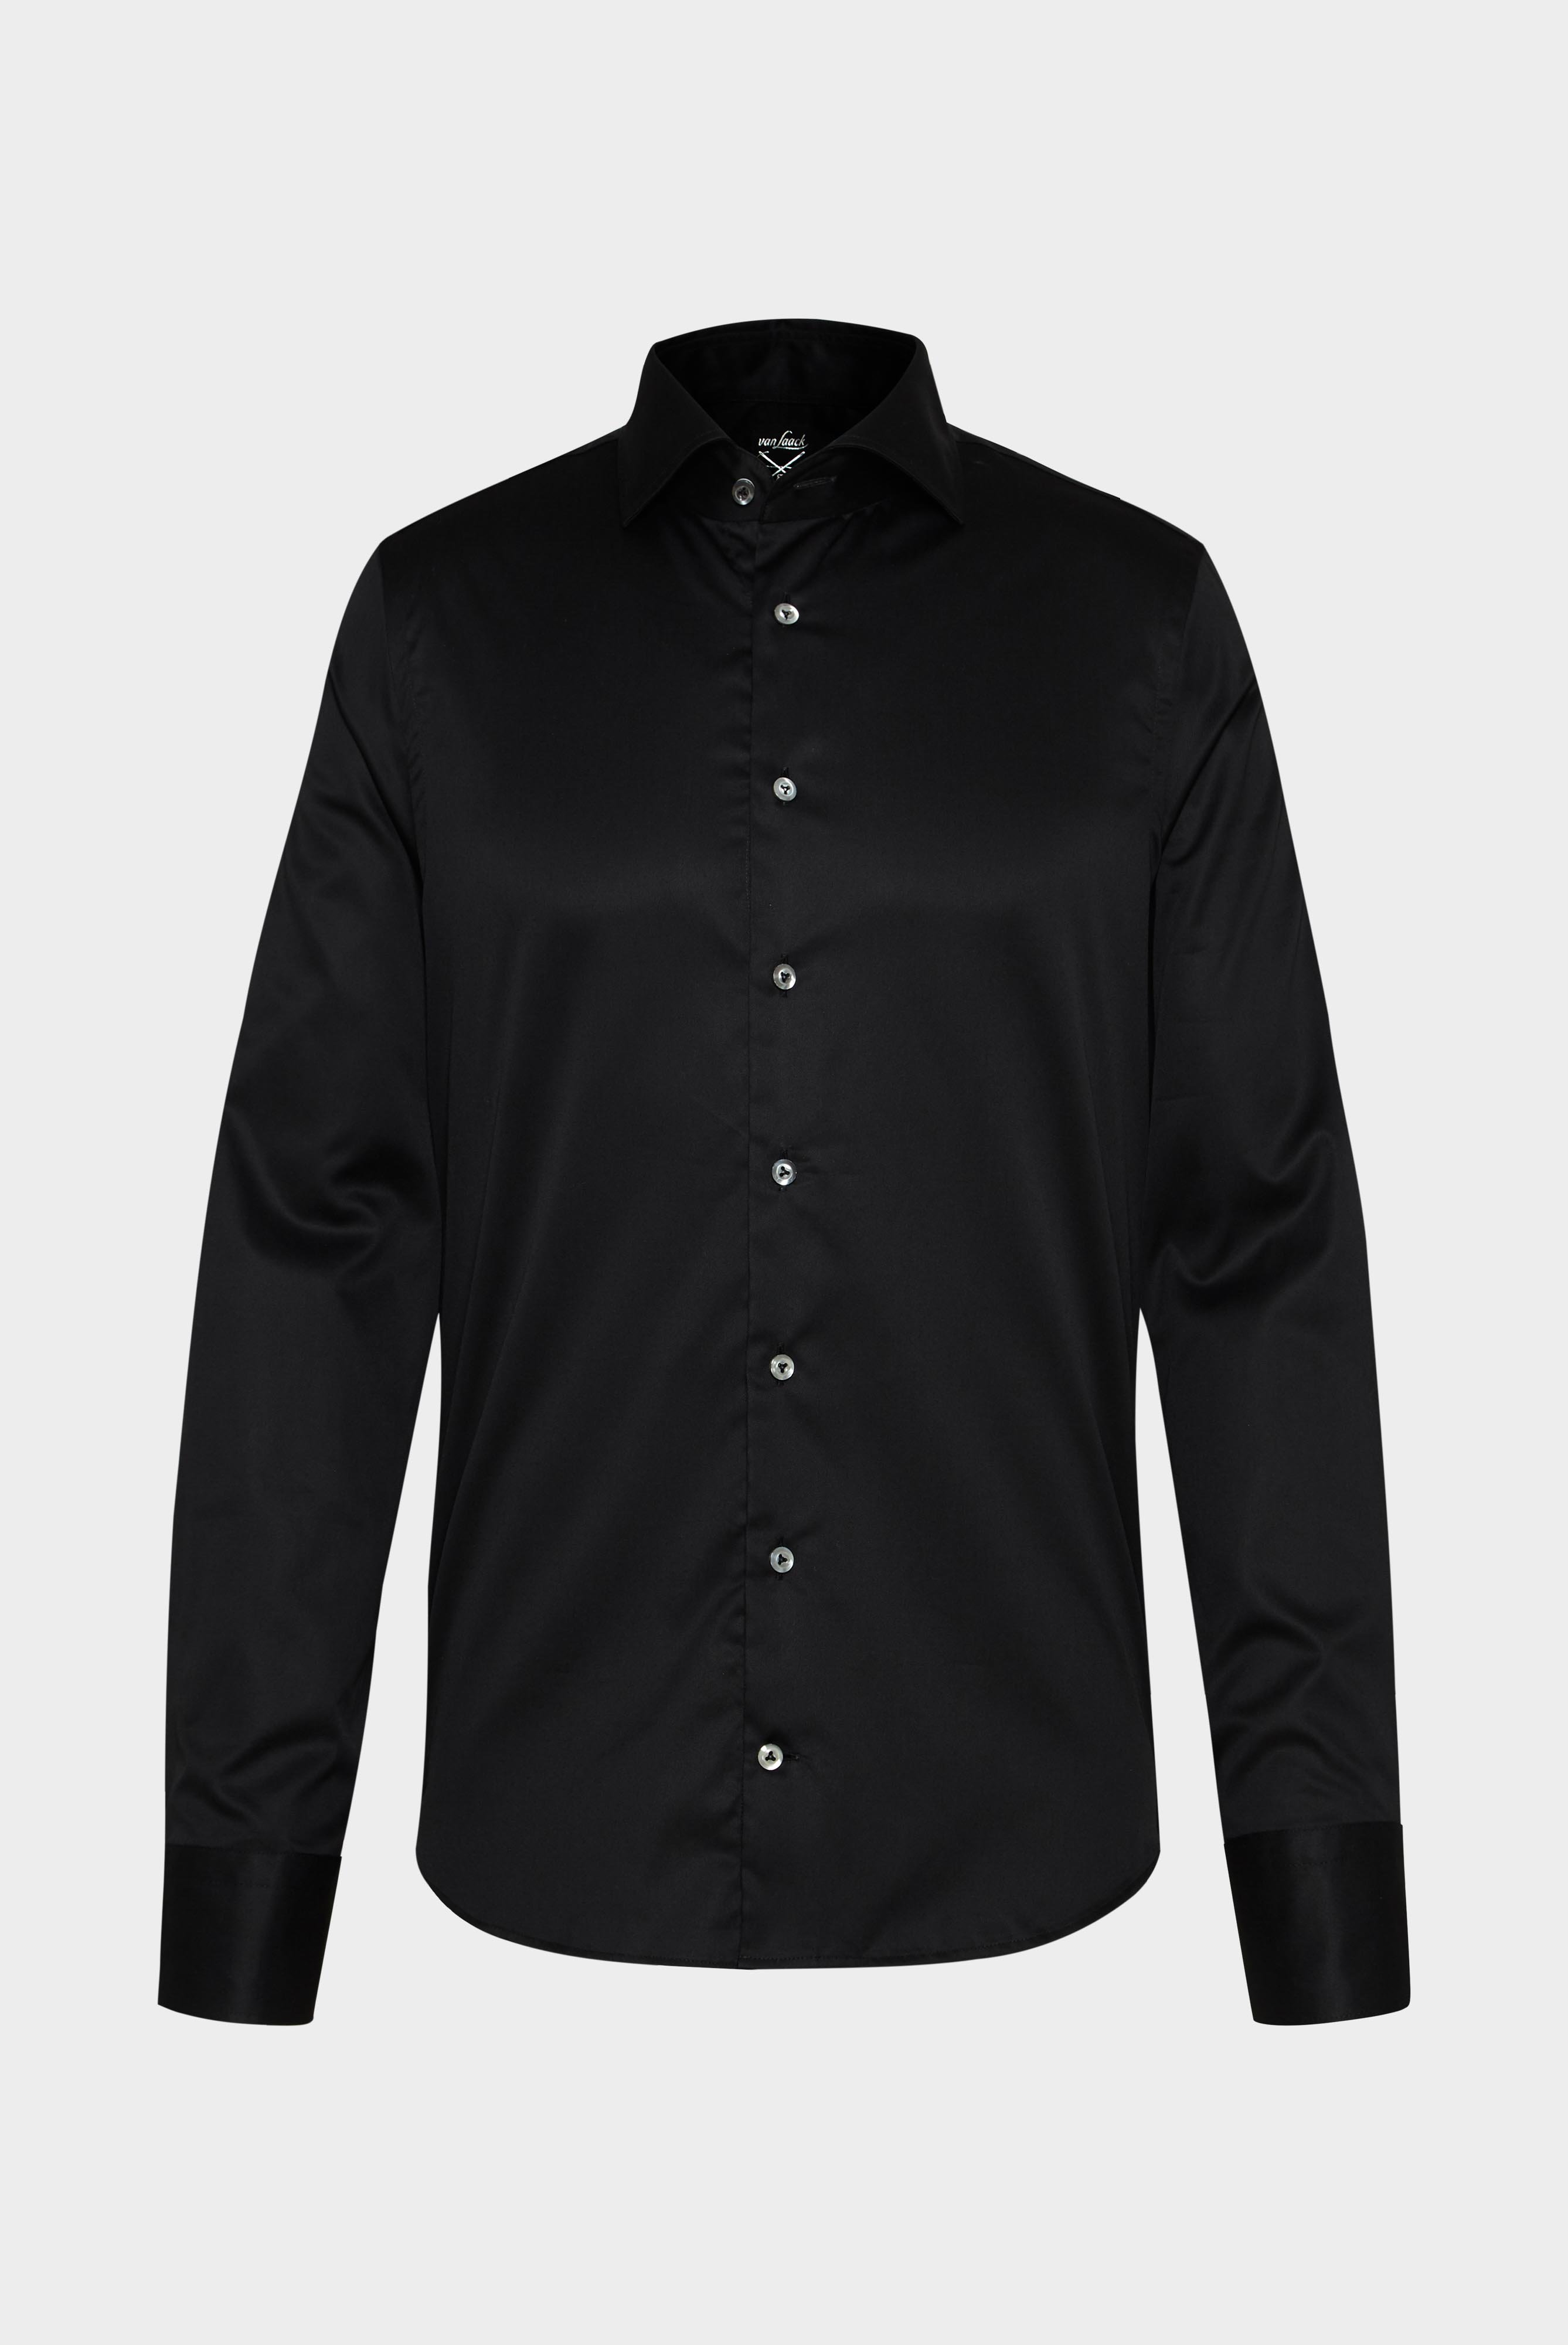 Bügelleichte Hemden+Bügelfreies Twill Hemd Slim Fit+20.2019.BQ.132241.099.39